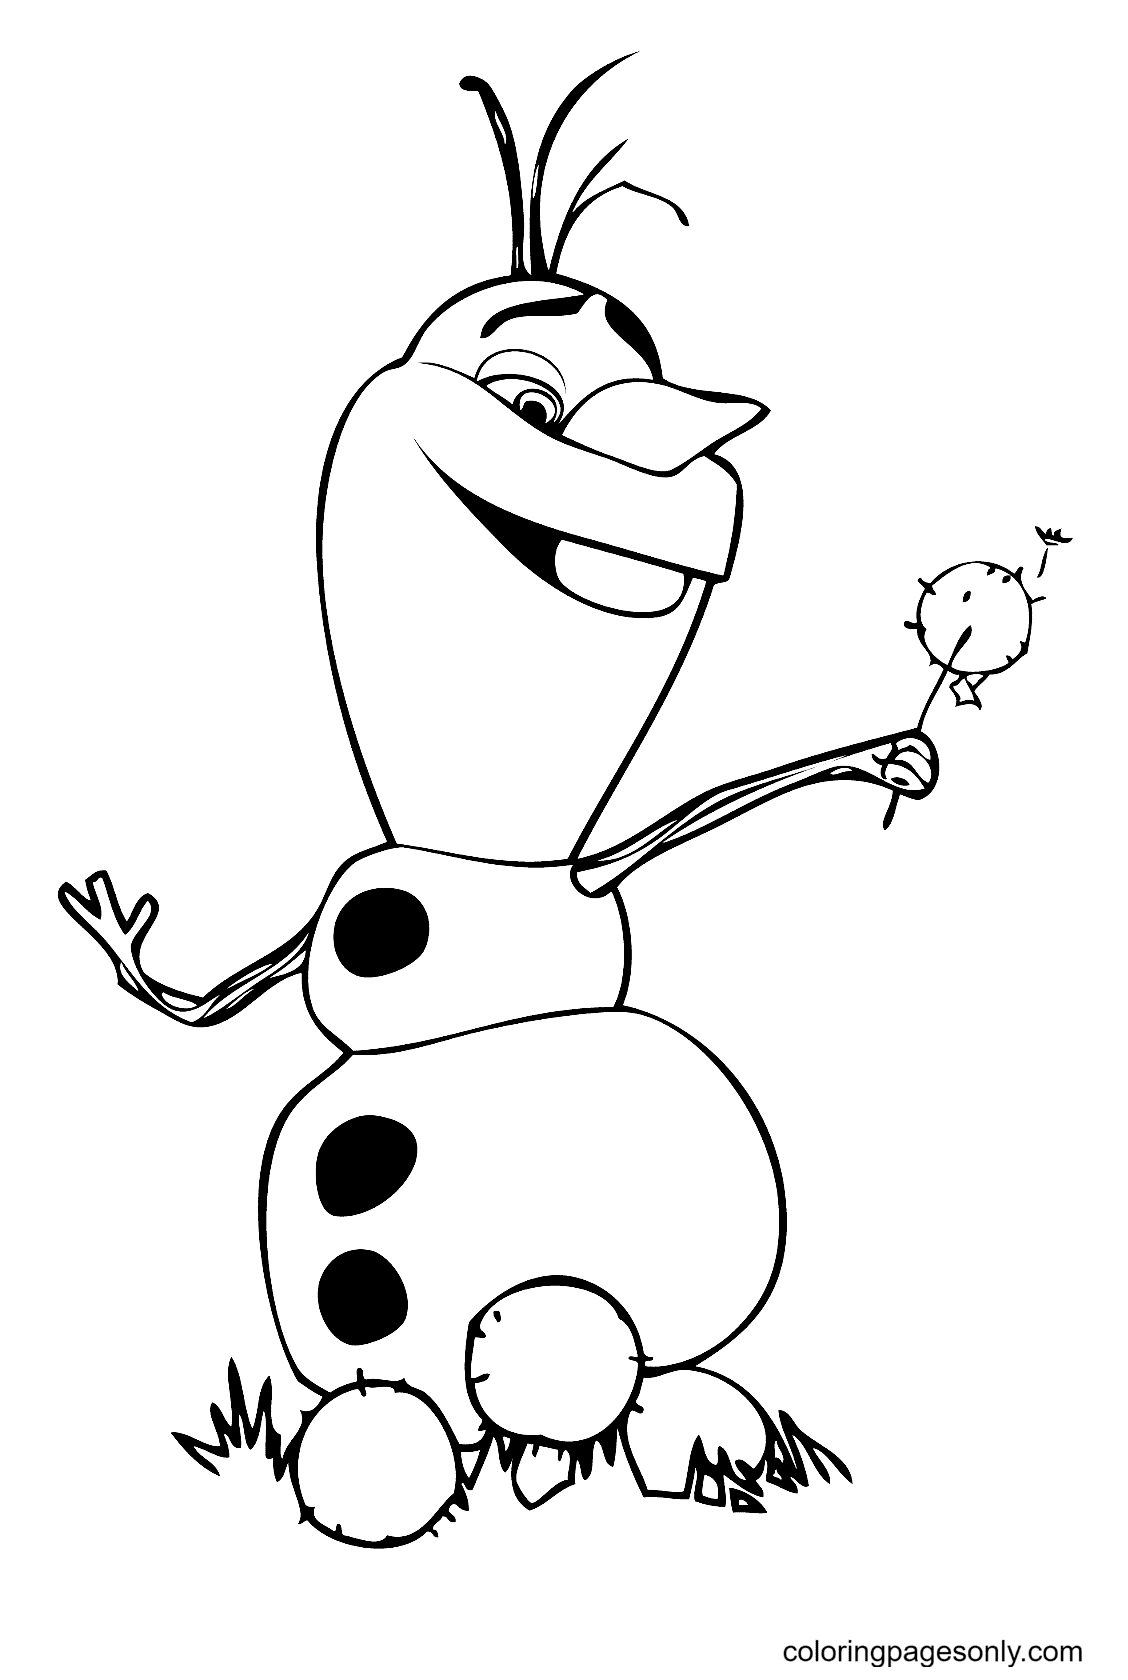 Olaf muñeco de nieve de Frozen de Olaf